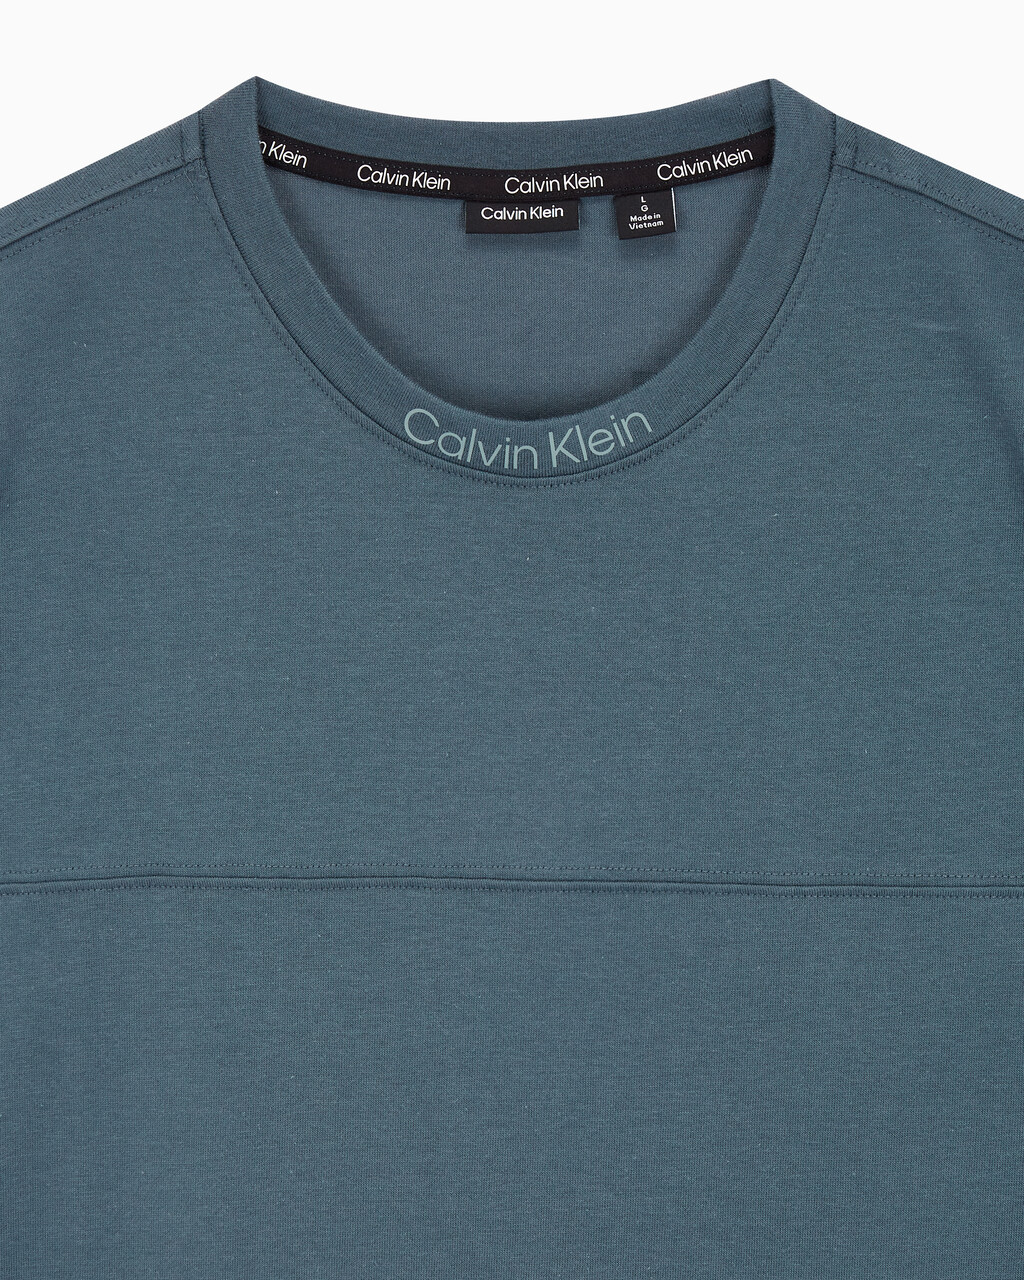 Buy 남성 릴렉스핏 저지 숏슬리브 티셔츠 in color OCEAN TEAL/ BLK